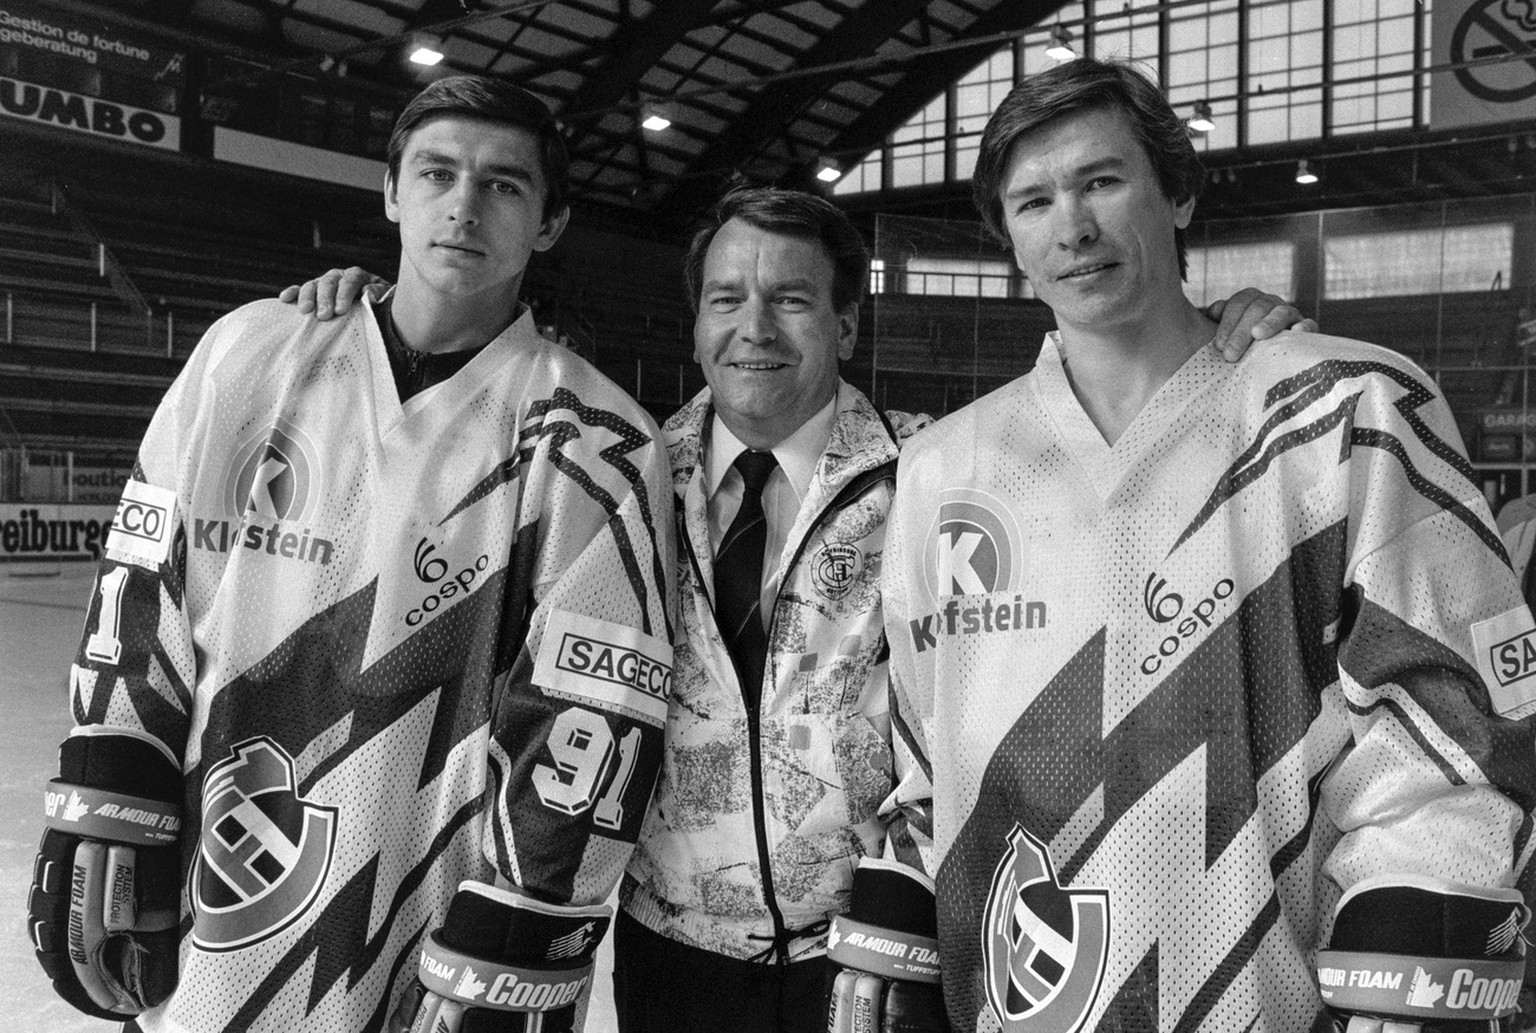 Jean Martinet, Mitte, Praesident des Eishockeyclubs HC Fribourg-Gotteron, mit den zwei Russen im Club Slawa Bykow, rechts, und Andrei Chomutow, links, aufgenommen im Oktober 1990. (KEYSTONE/Str)